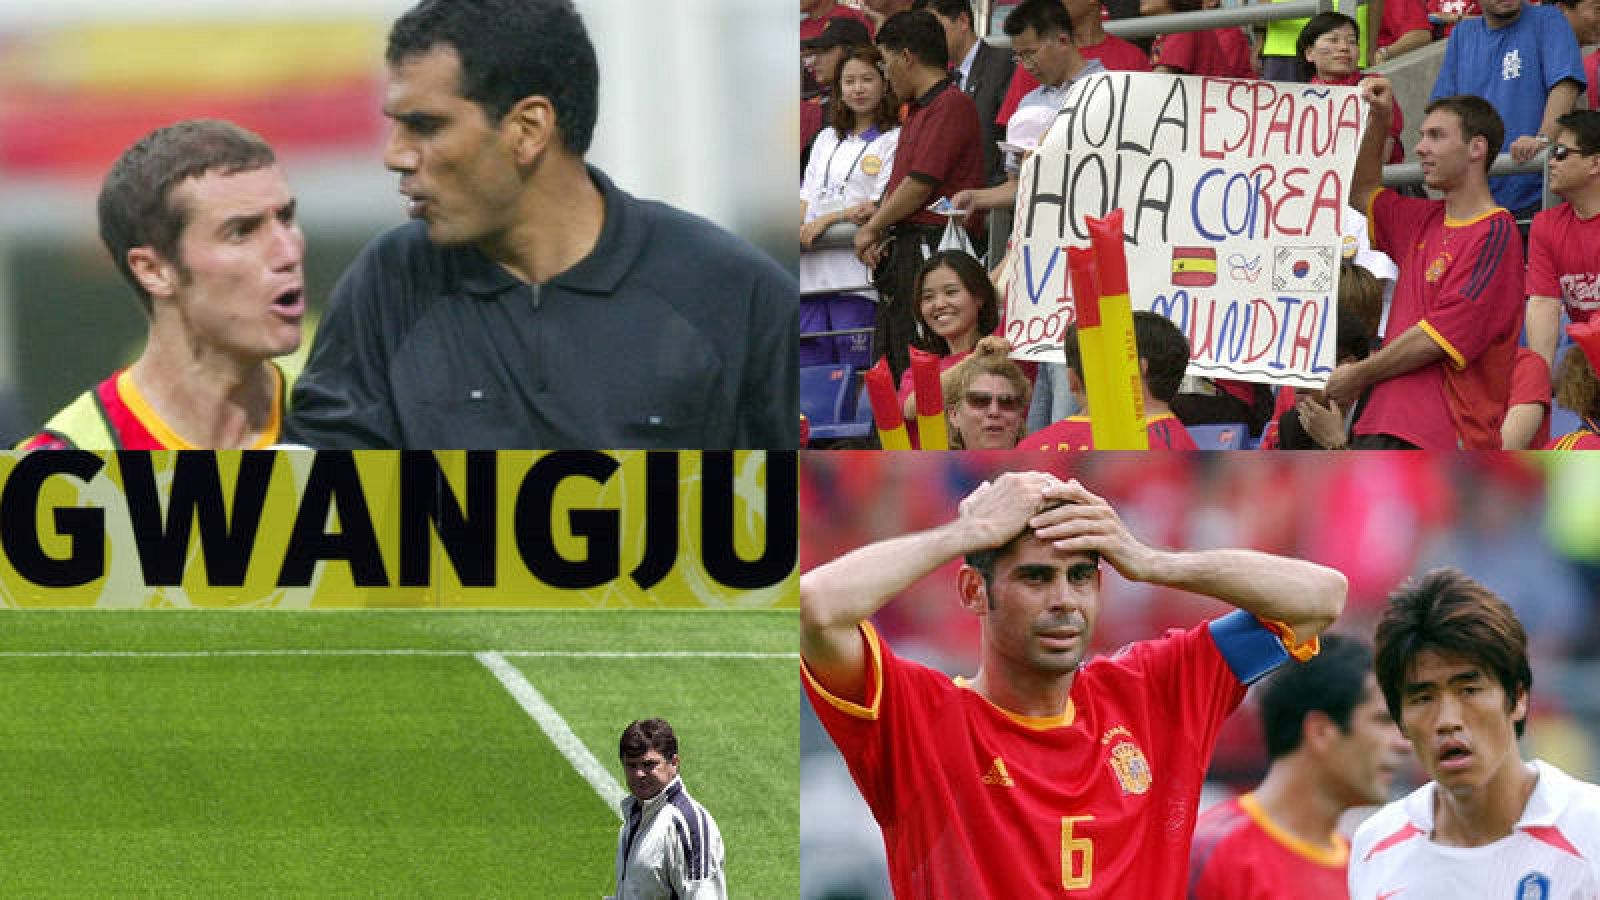 Imágenes del Corea del Sur - España del Mundial de fútbol de 2002